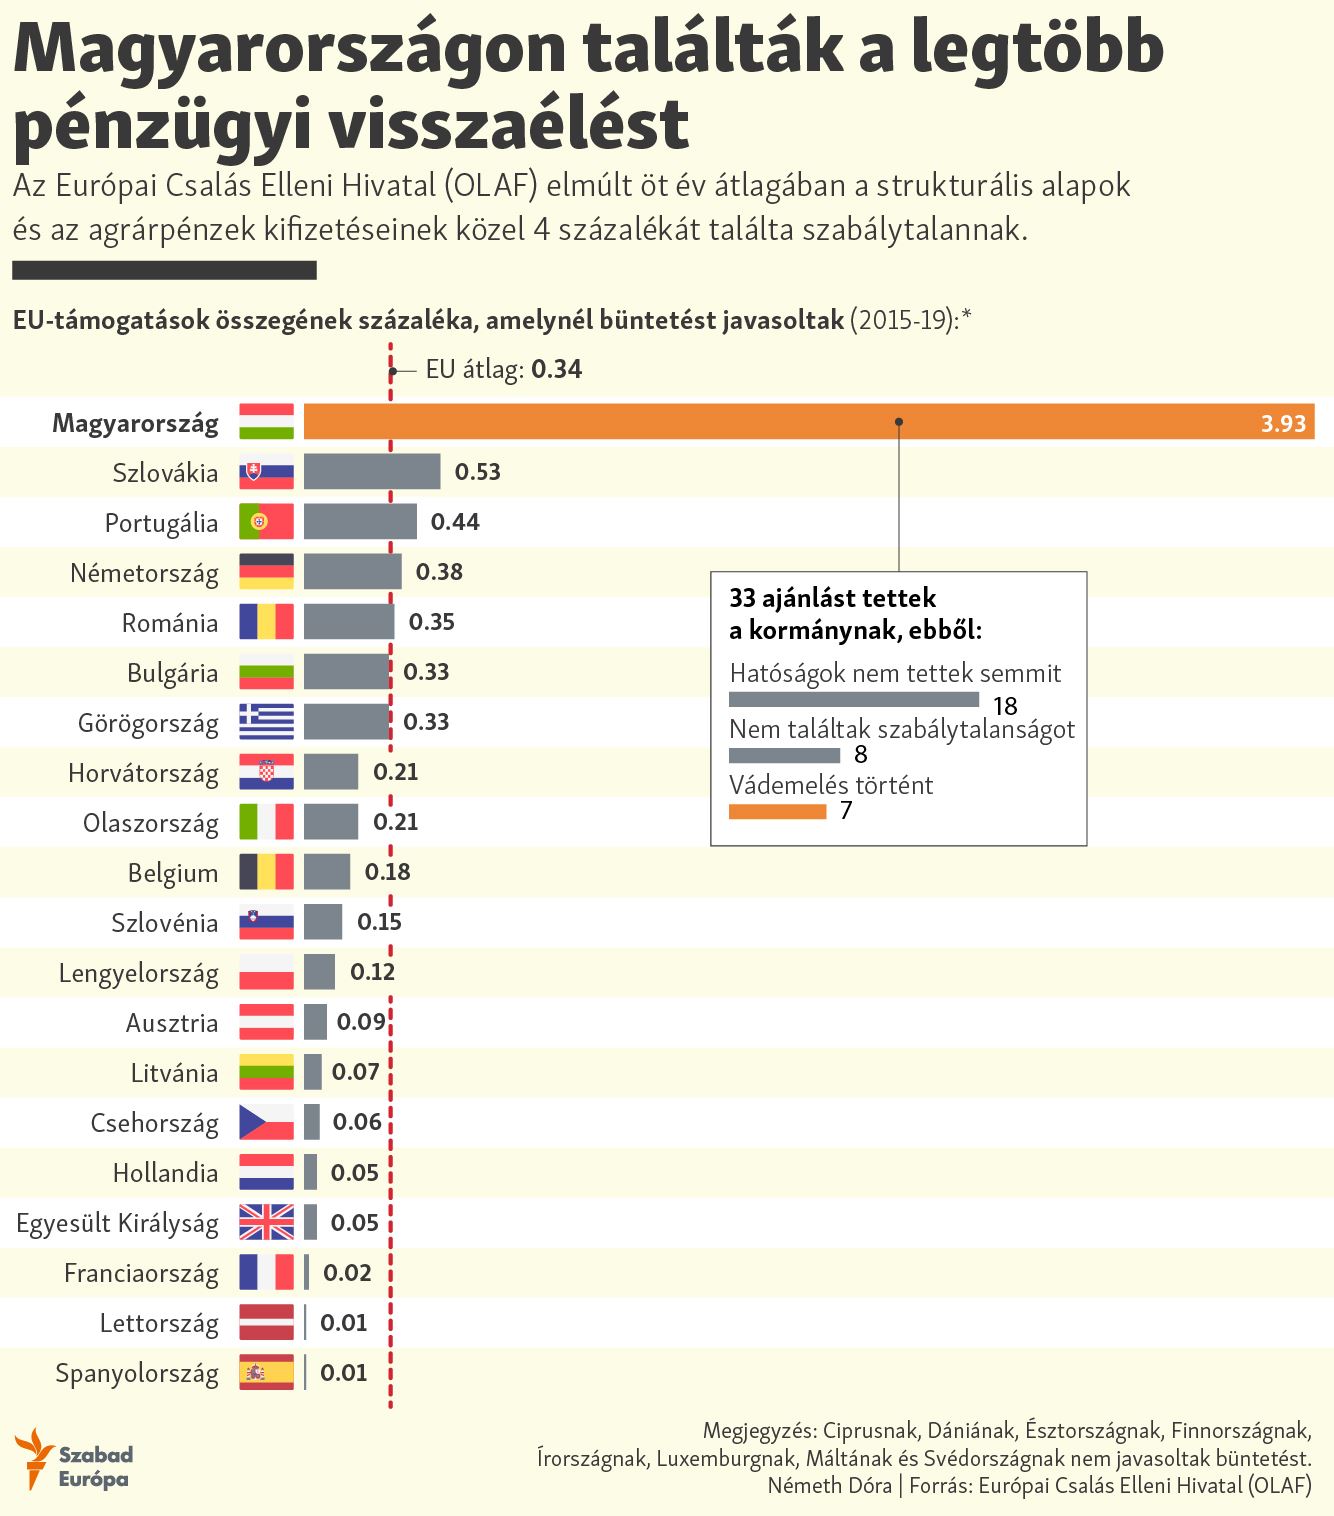 Magyarországon találták a legtöbb pénzügyi visszaélést